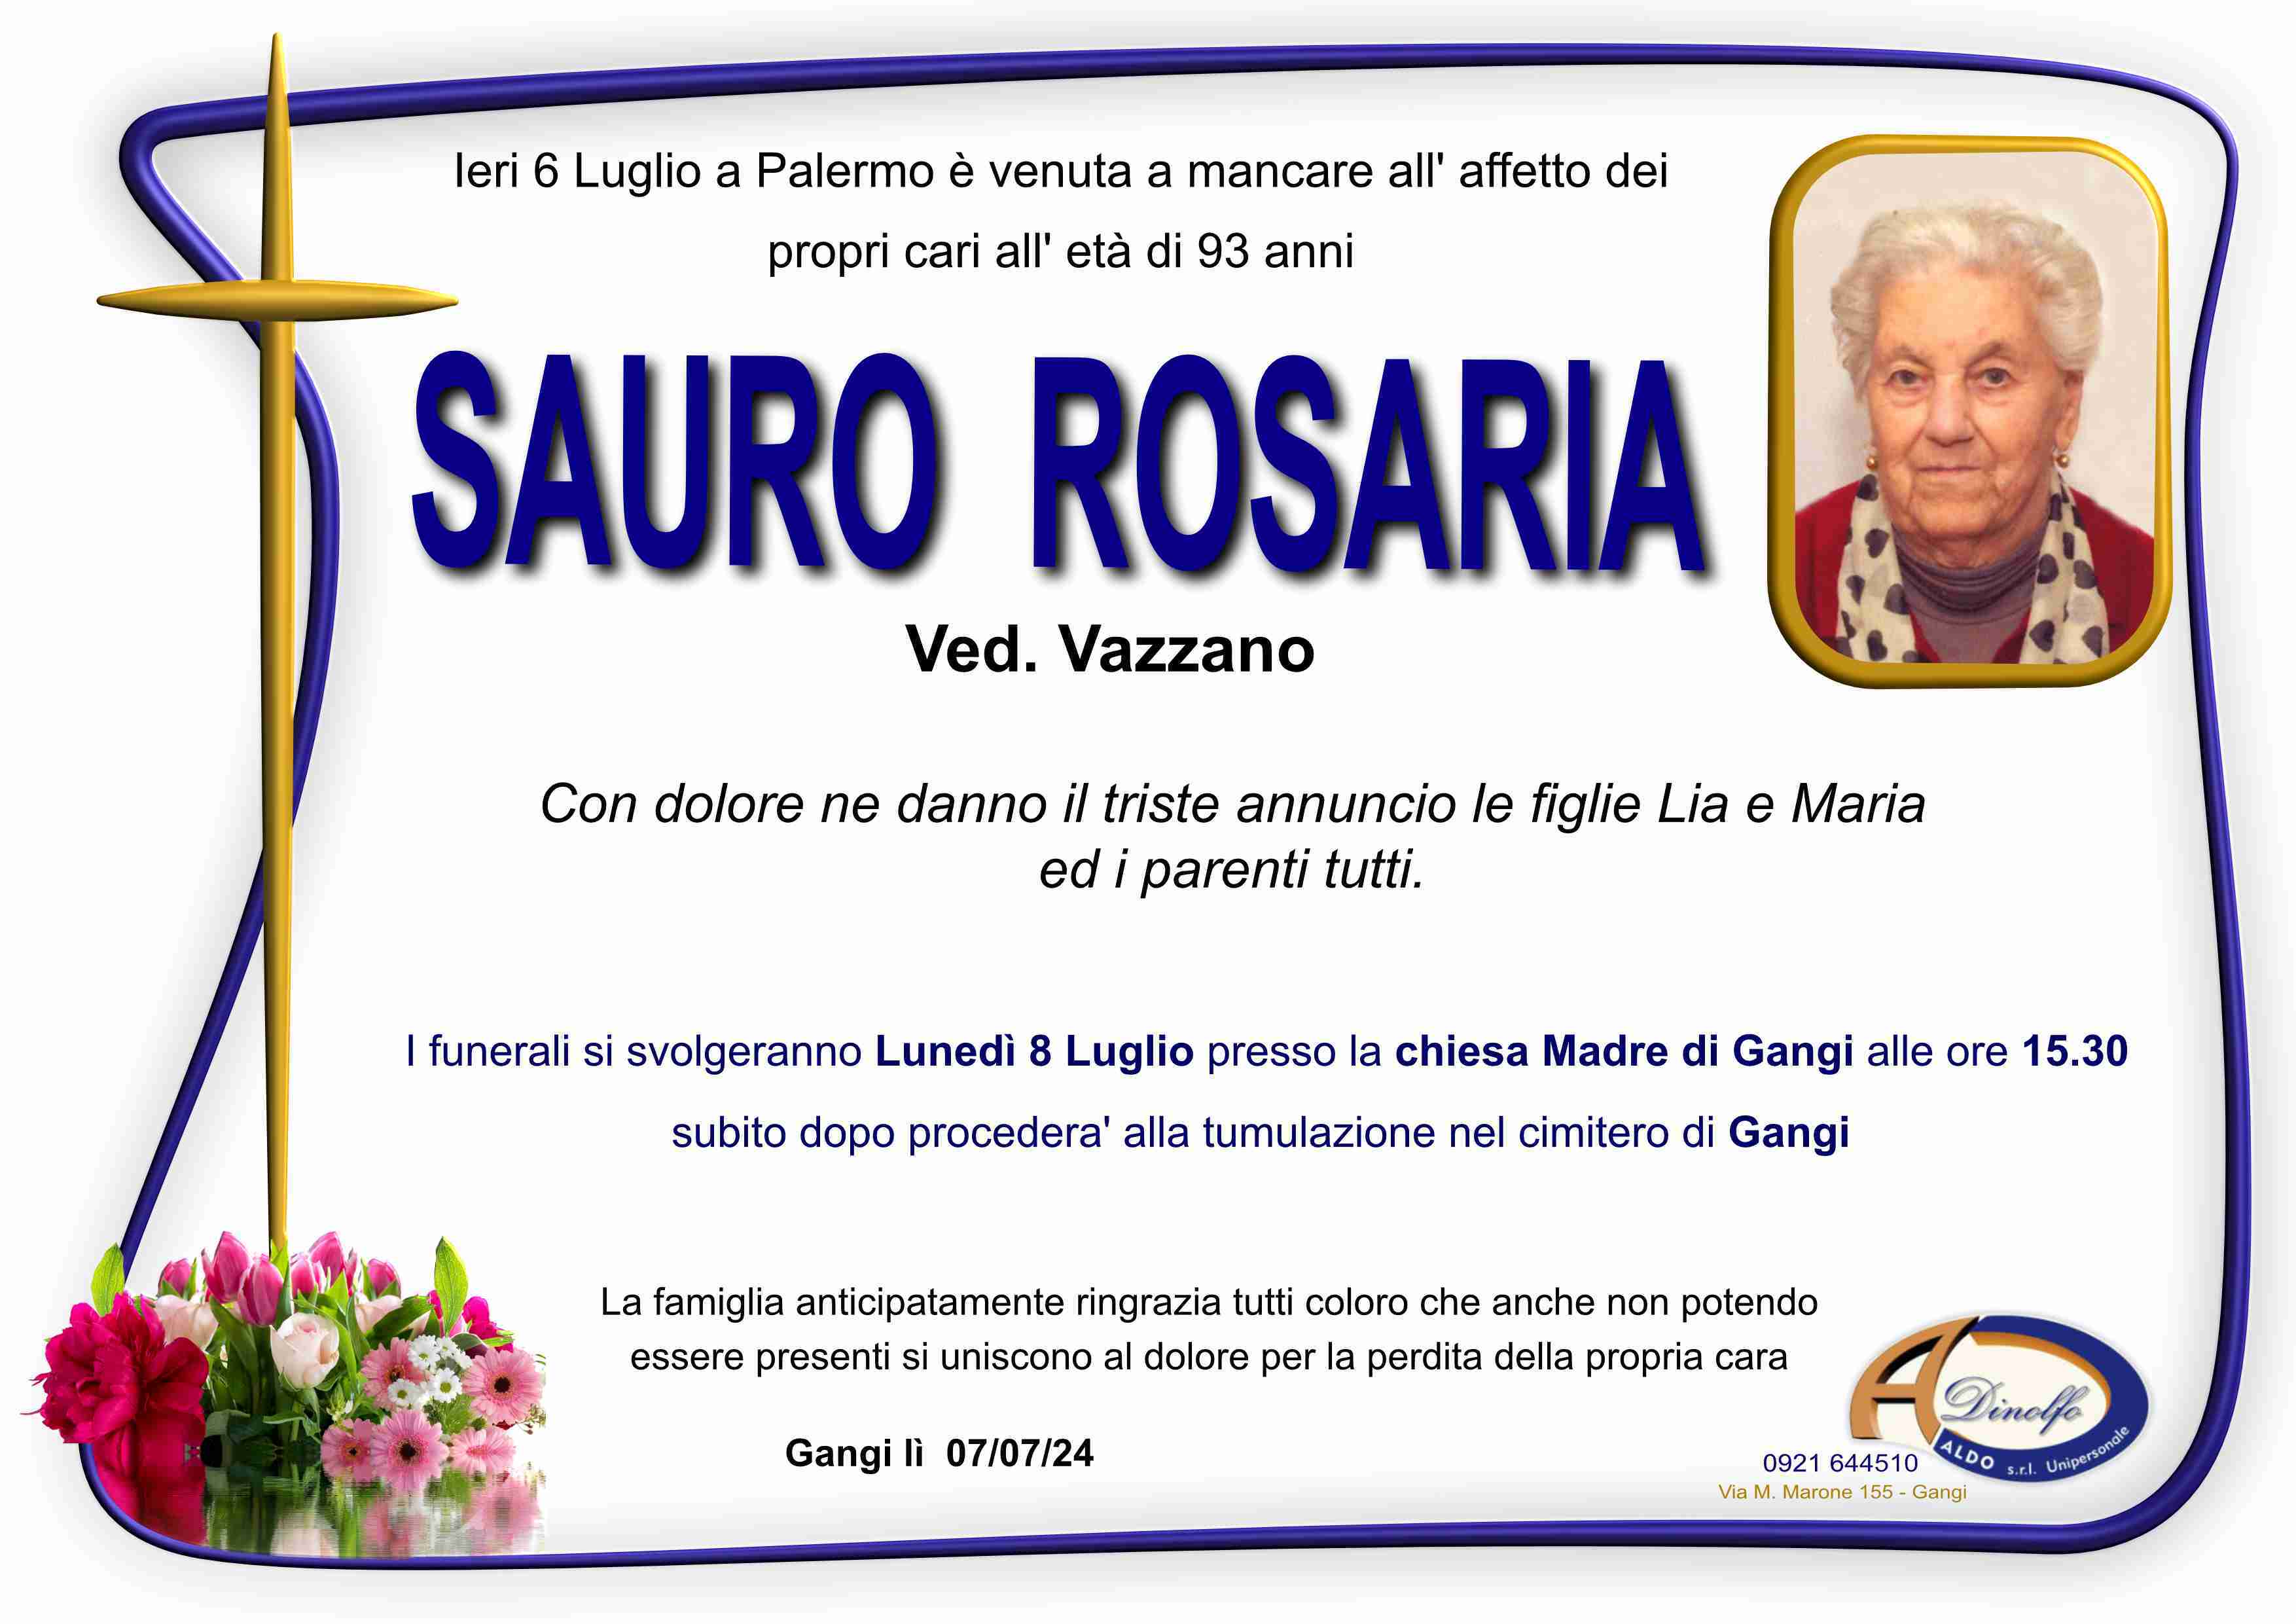 Rosaria Sauro